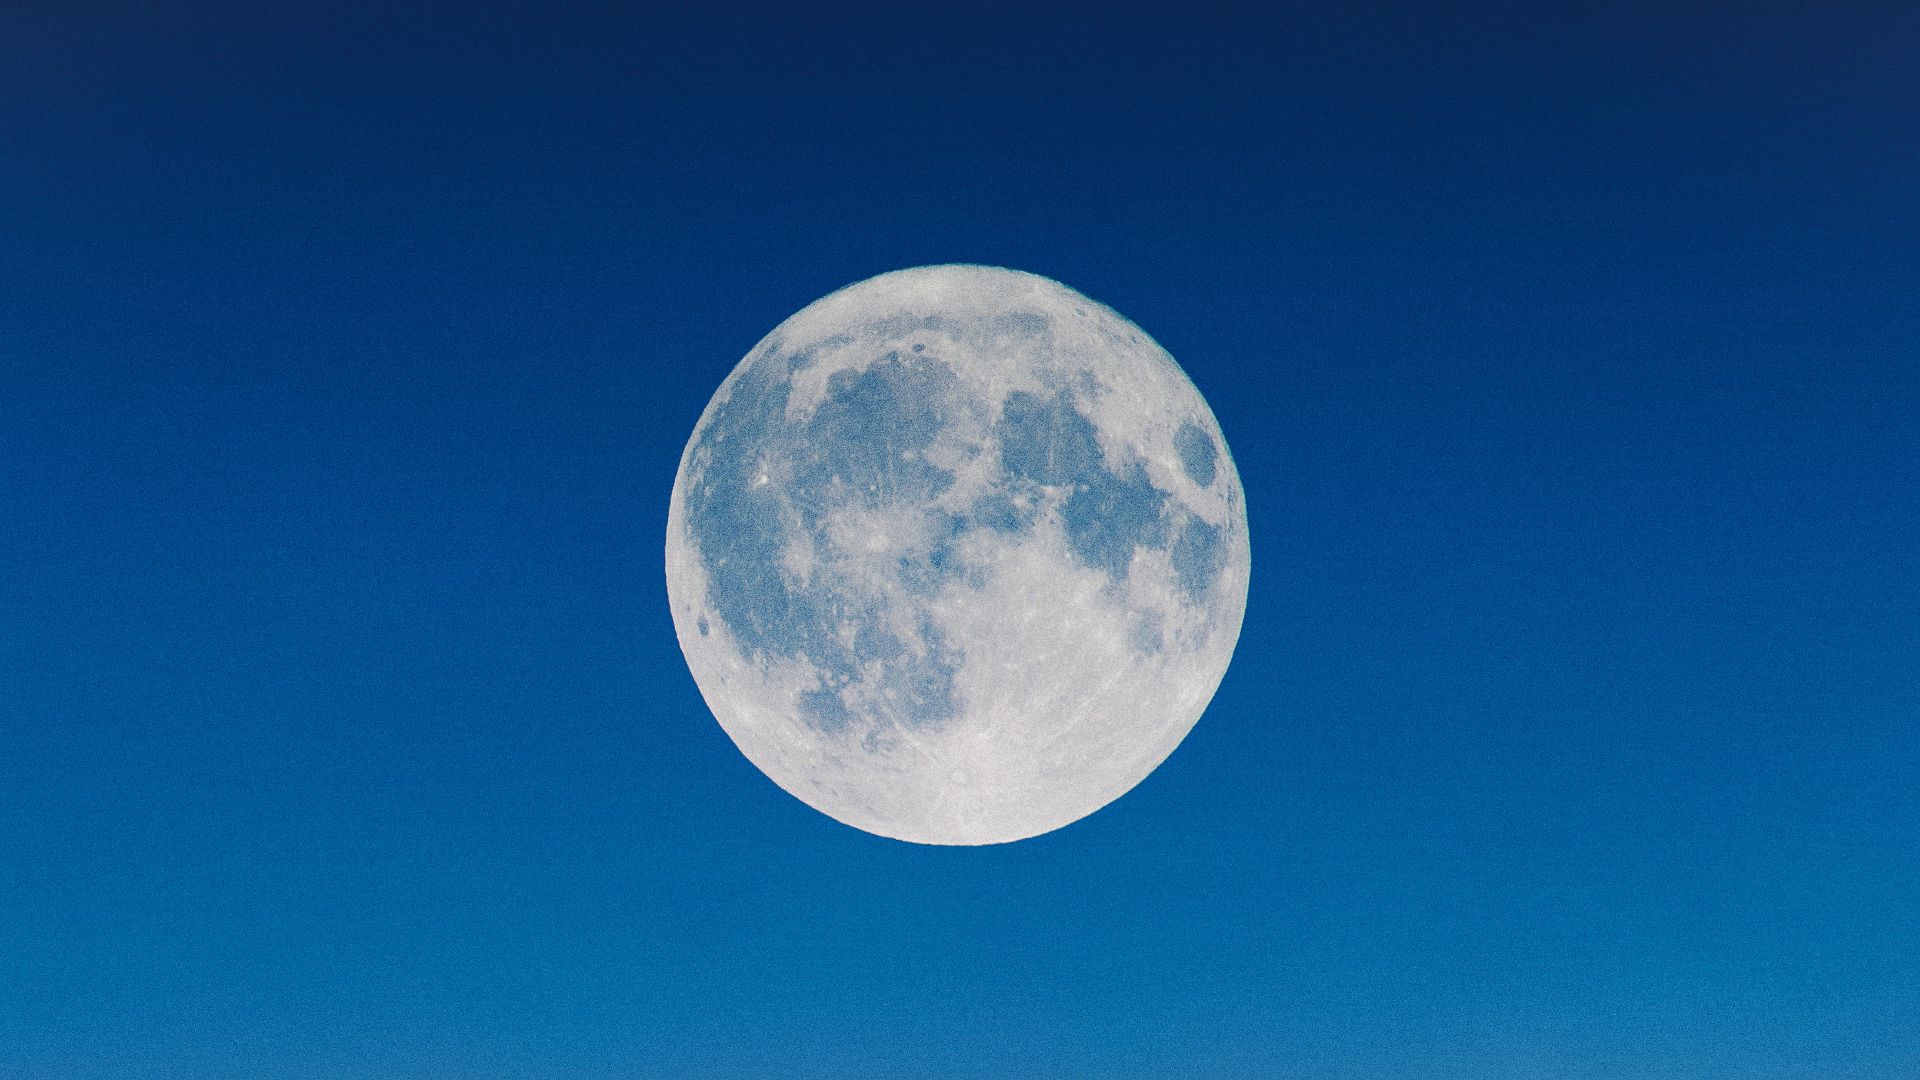 The moon against blue sky